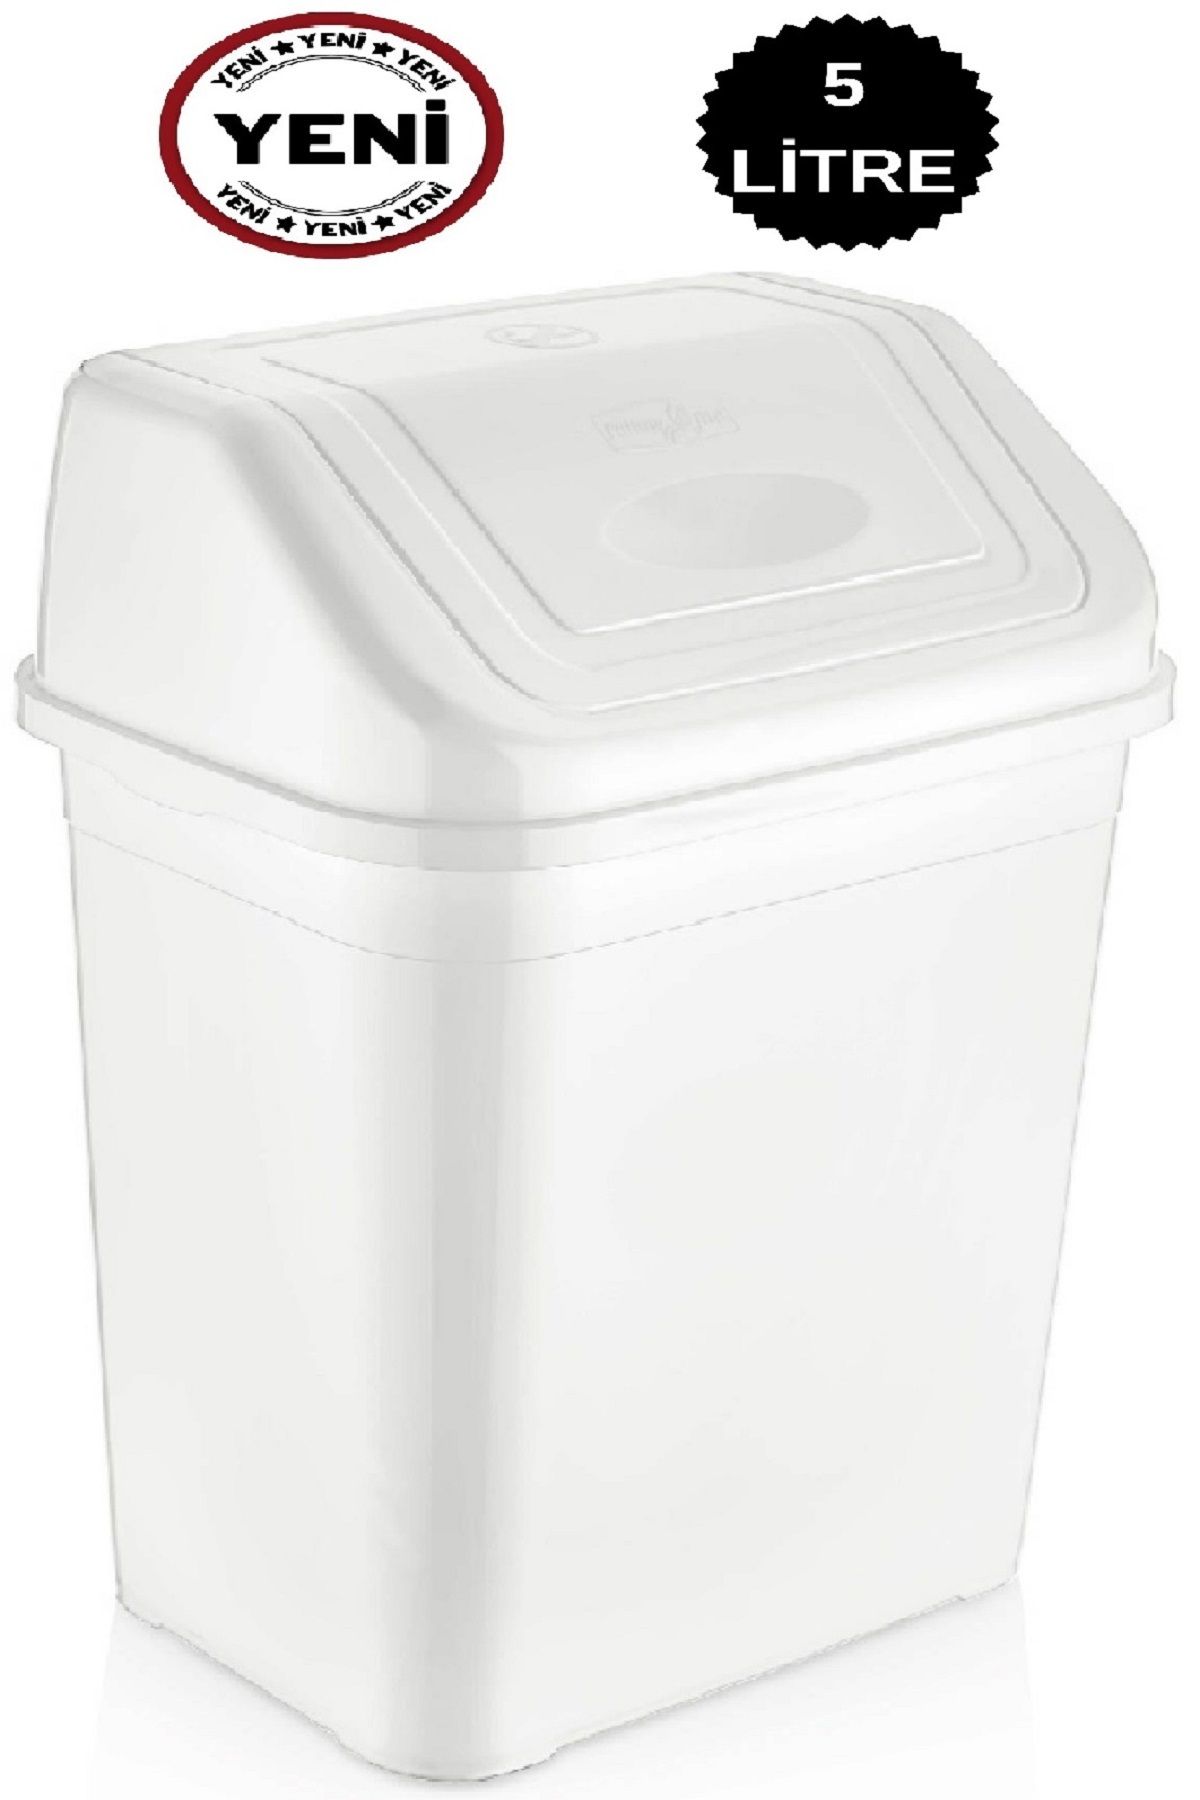 DEEMBRO Çöp kovası 5 Litre  Masa Üstü Mutfak Tezgah Üstü Banyo Ofis tek Kapaklı beyaz 1. kalite malzeme